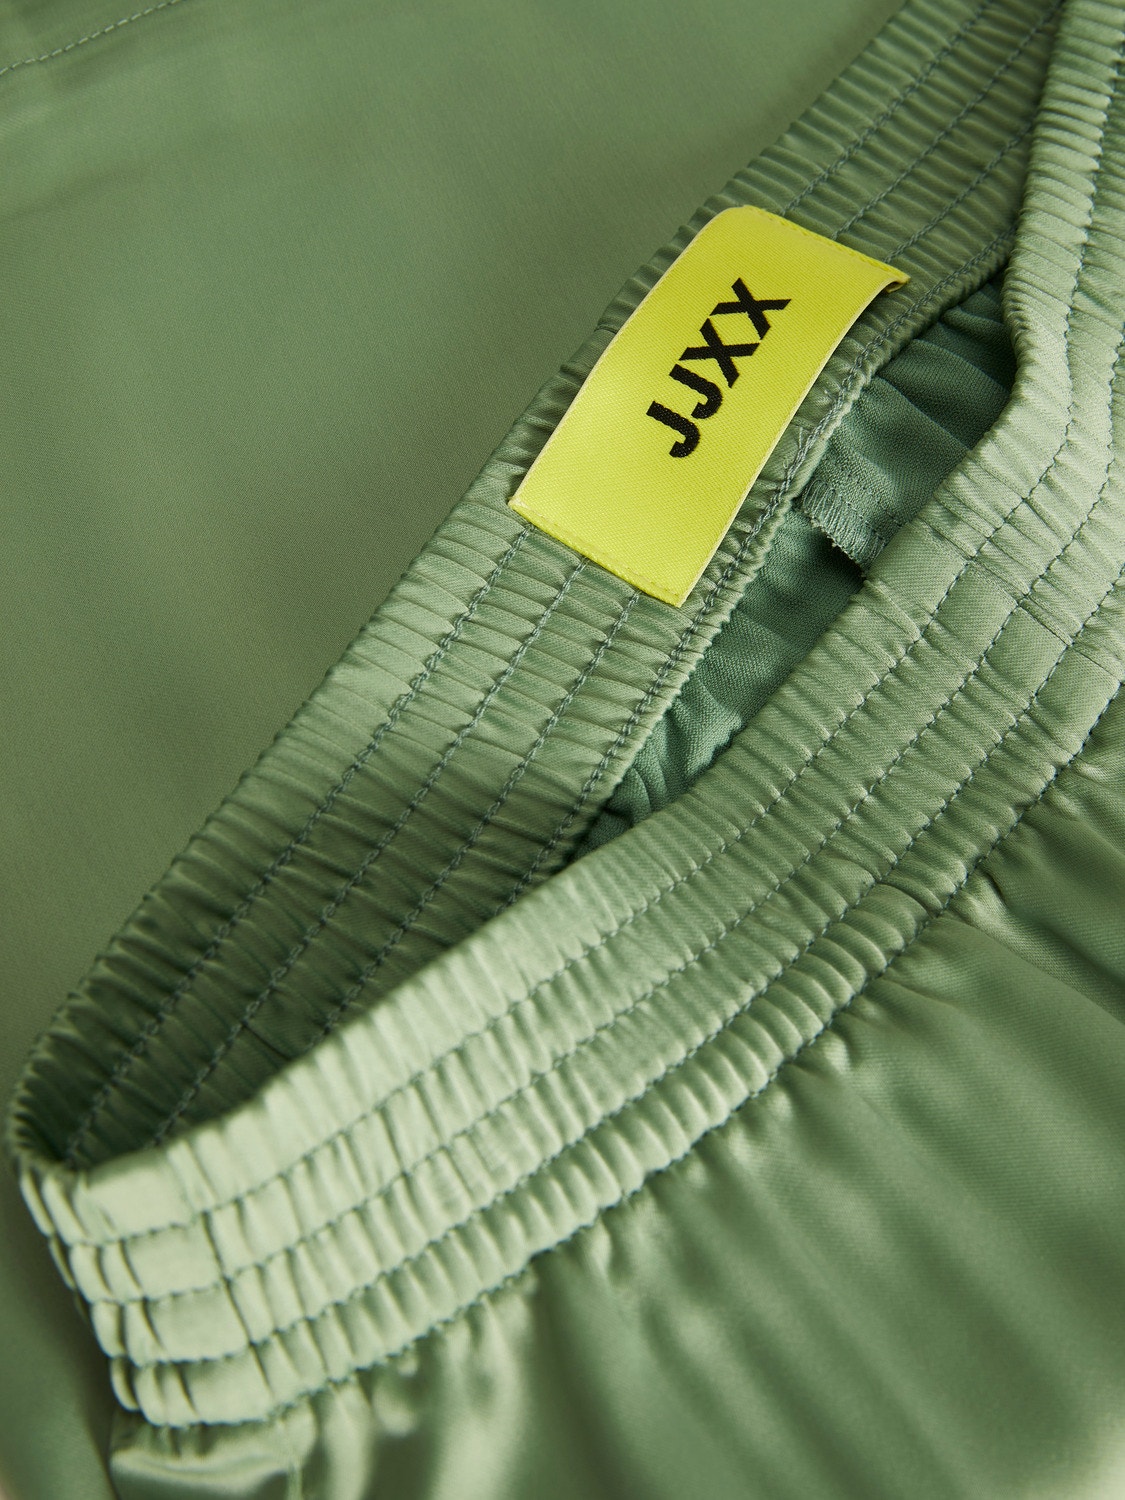 JJXX JXKIRA Klasyczne spodnie -Loden Frost - 12200161